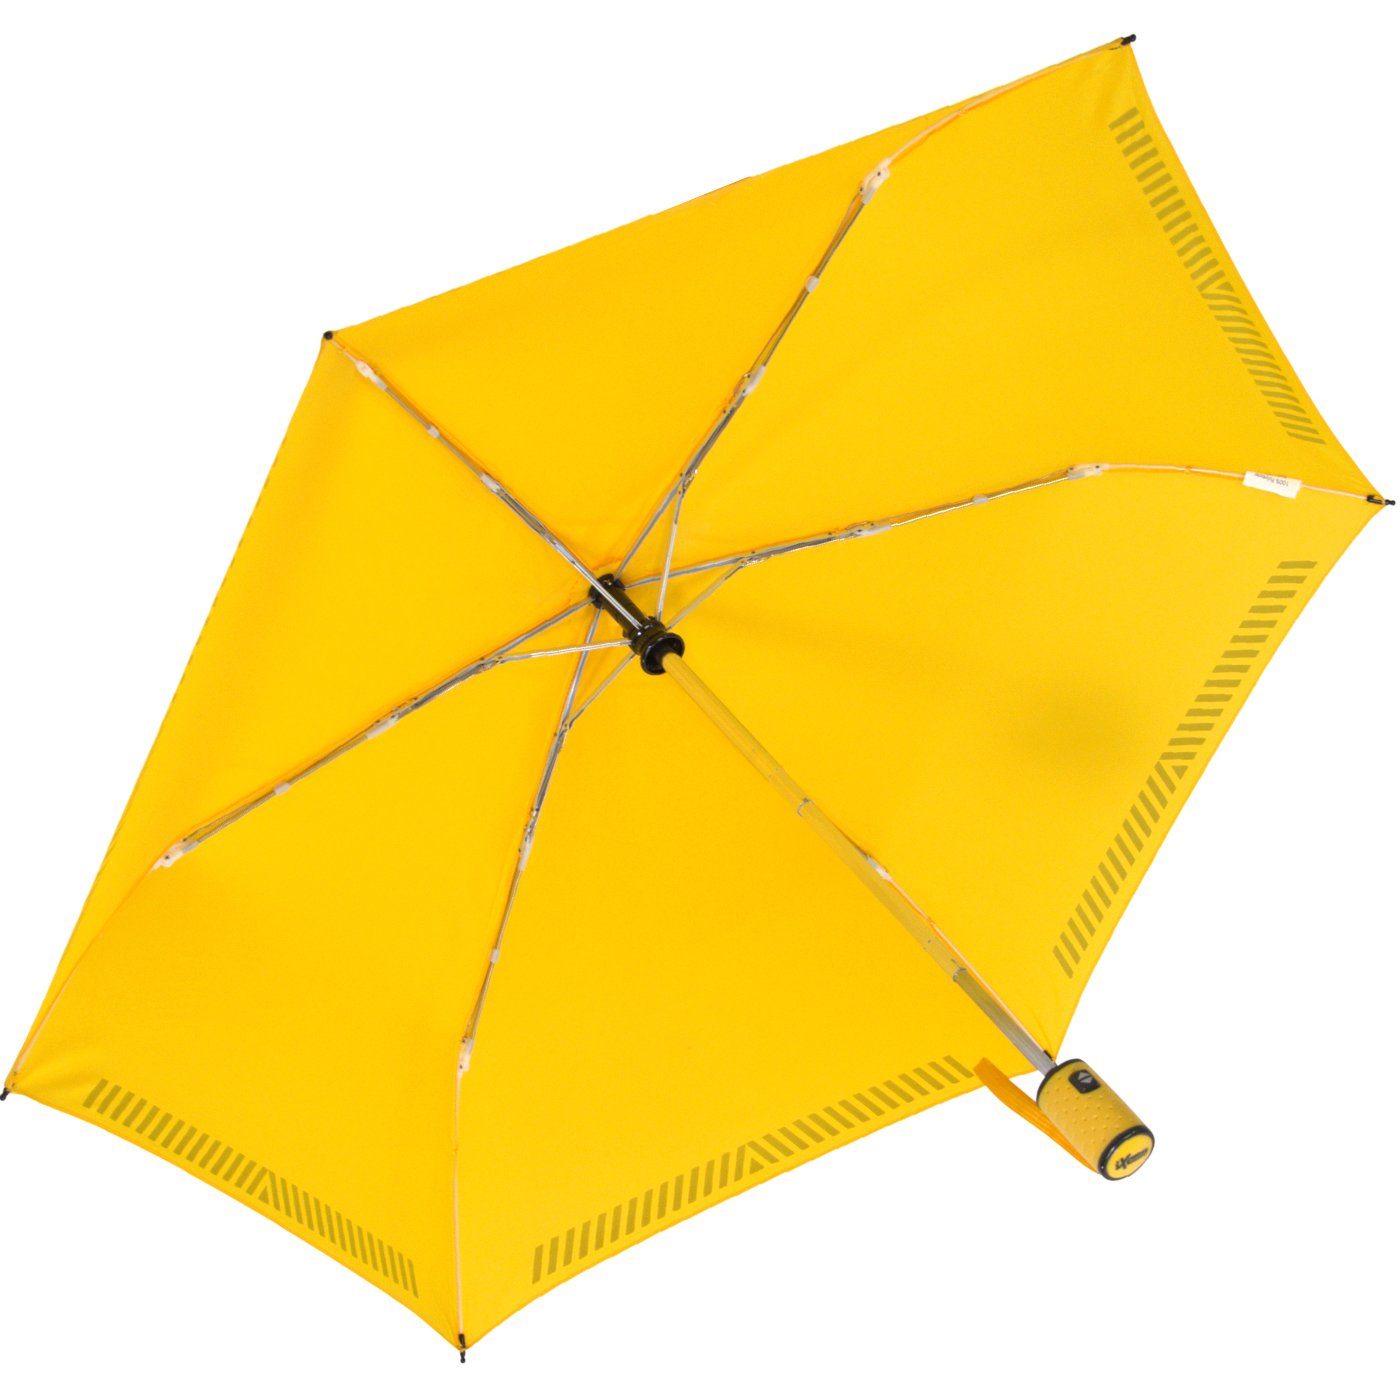 durch Auf-Zu-Automatik, reflektierend, gelb mit Taschenregenschirm Kinderschirm - Reflex-Streifen iX-brella Sicherheit